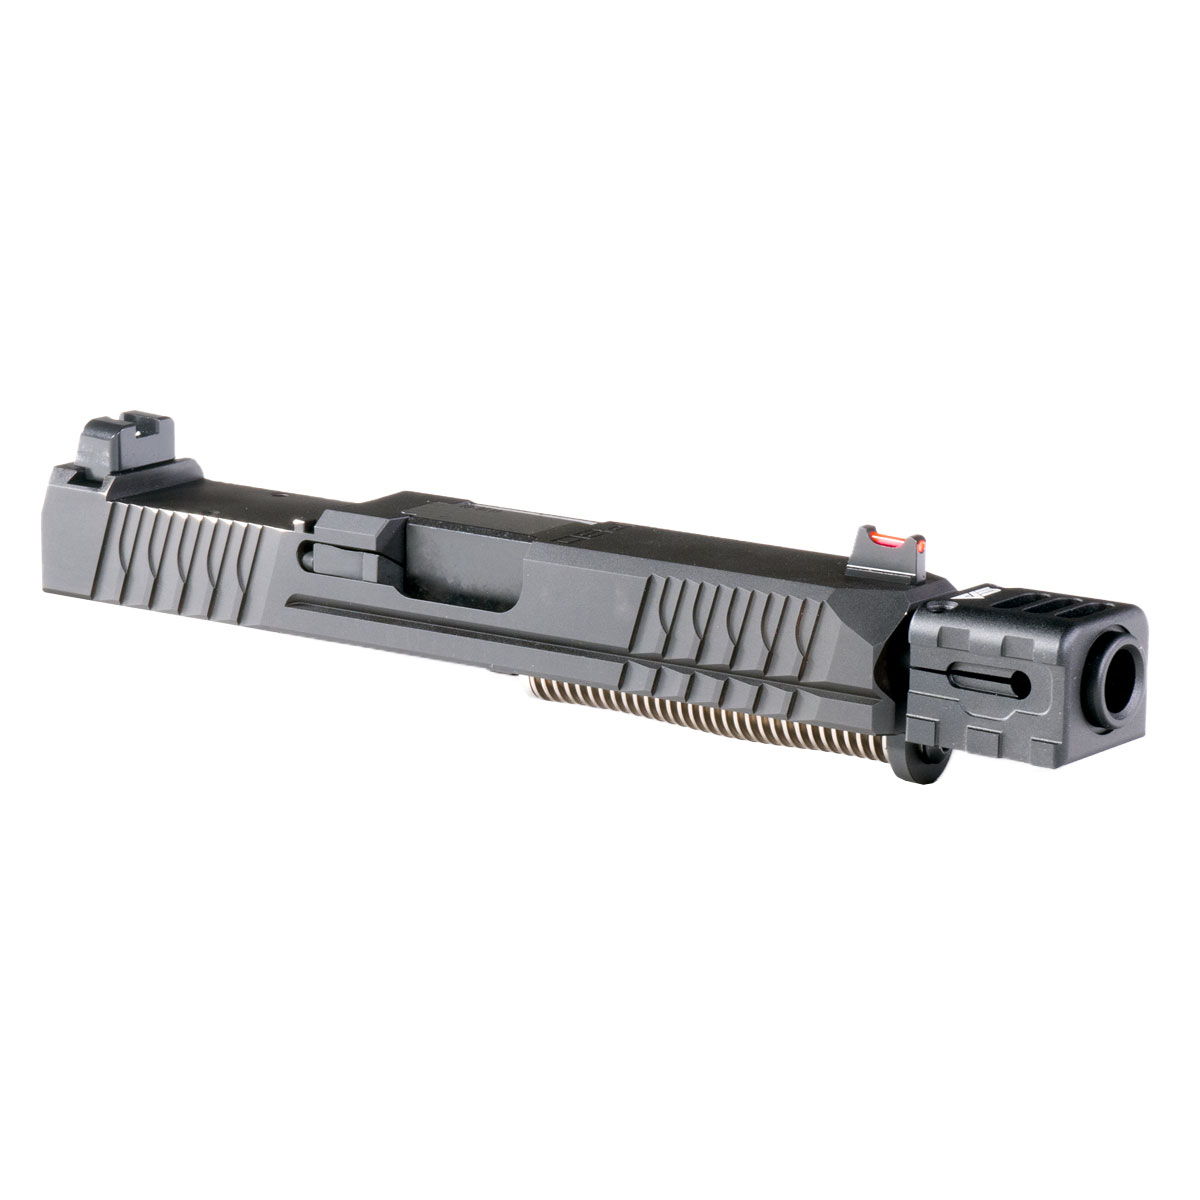 DD 'Chidiya' 9mm Complete Slide Kit - Glock 19 Gen 1-3 Compatible